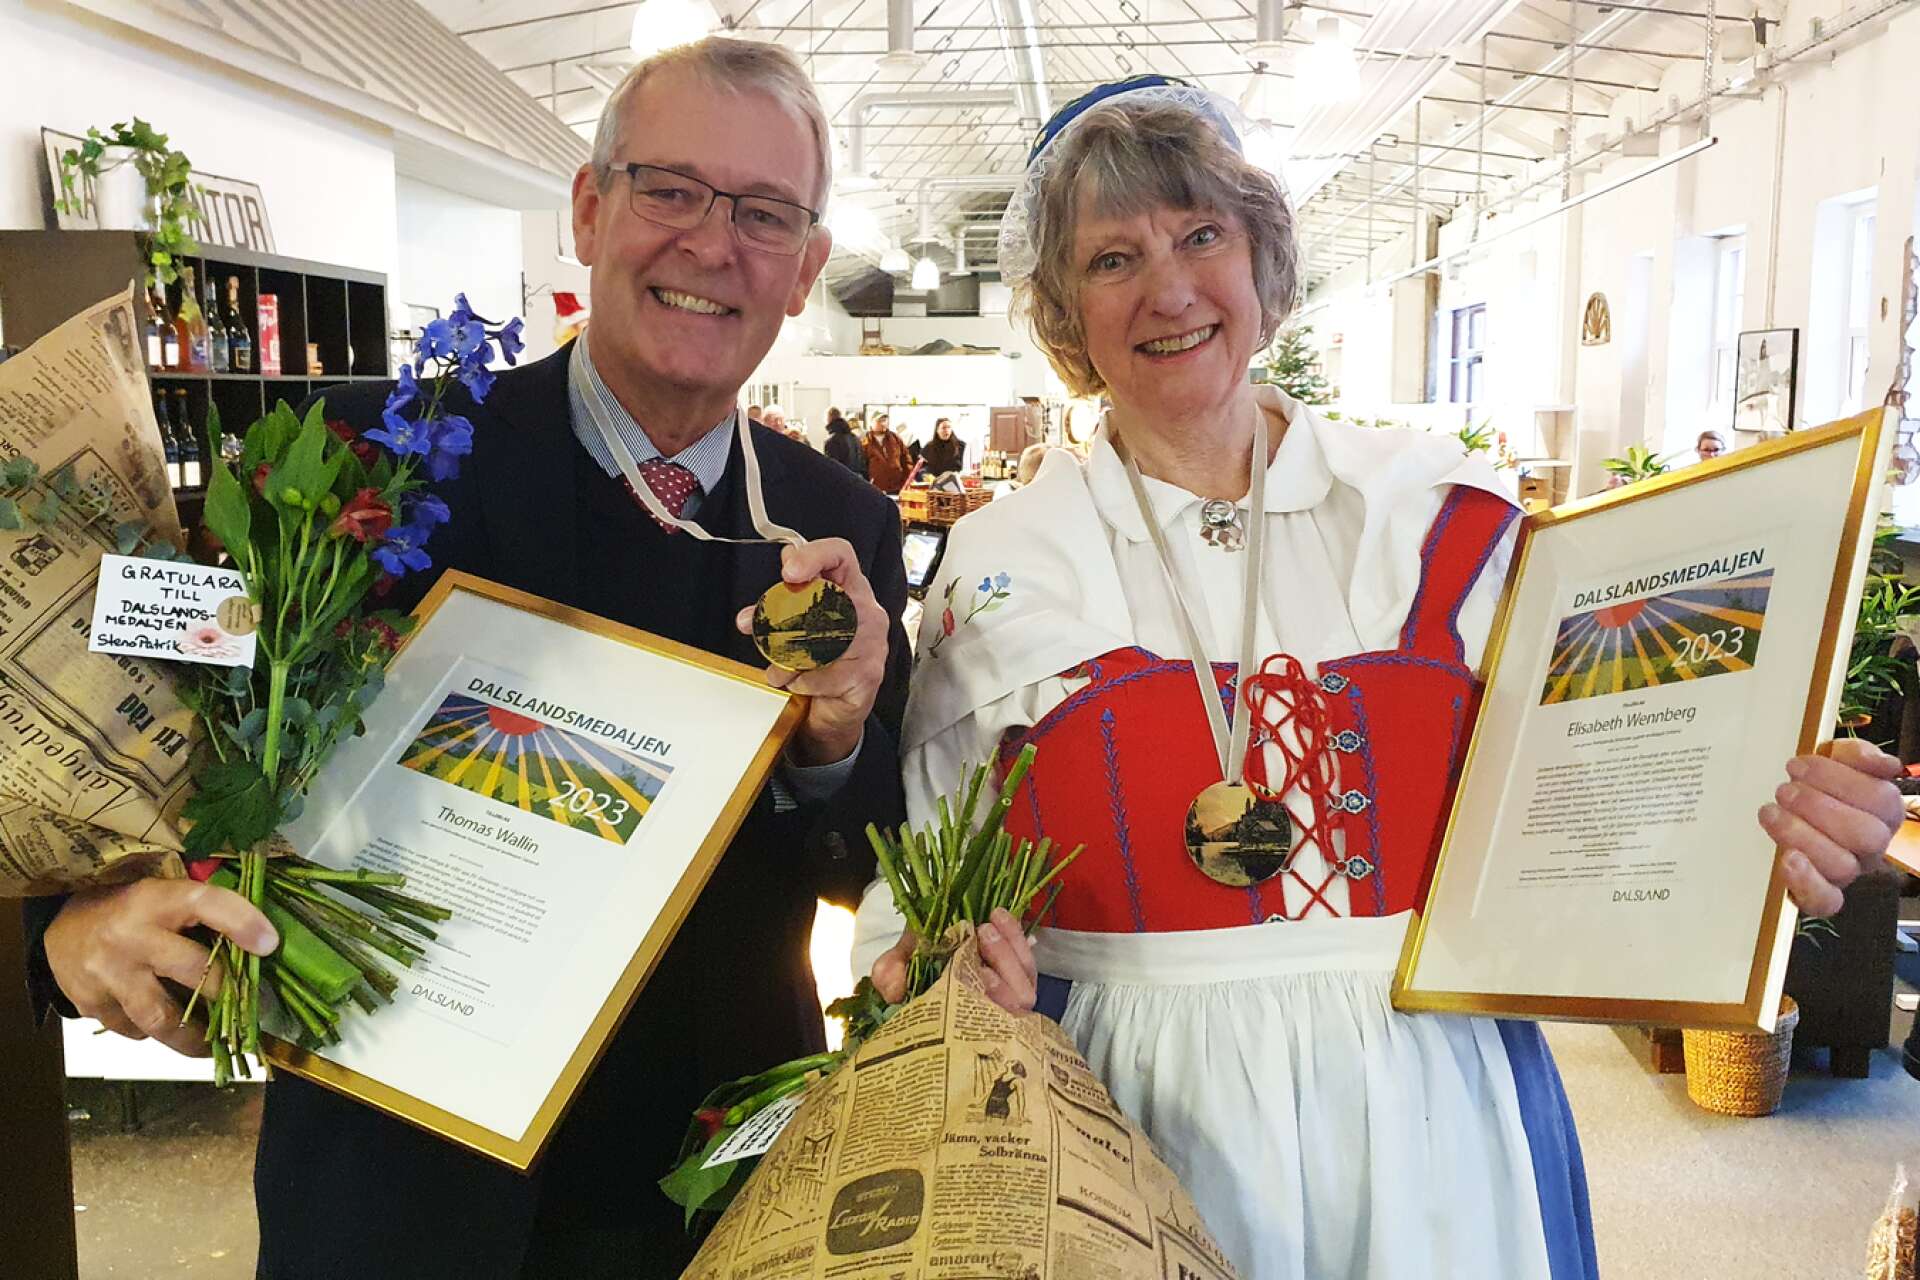 Tidningsmannen Thomas Wallin och konstnären Elisabeth Wennberg fick i lördags ta emot sina Dalslandsmedaljer i Håverud.